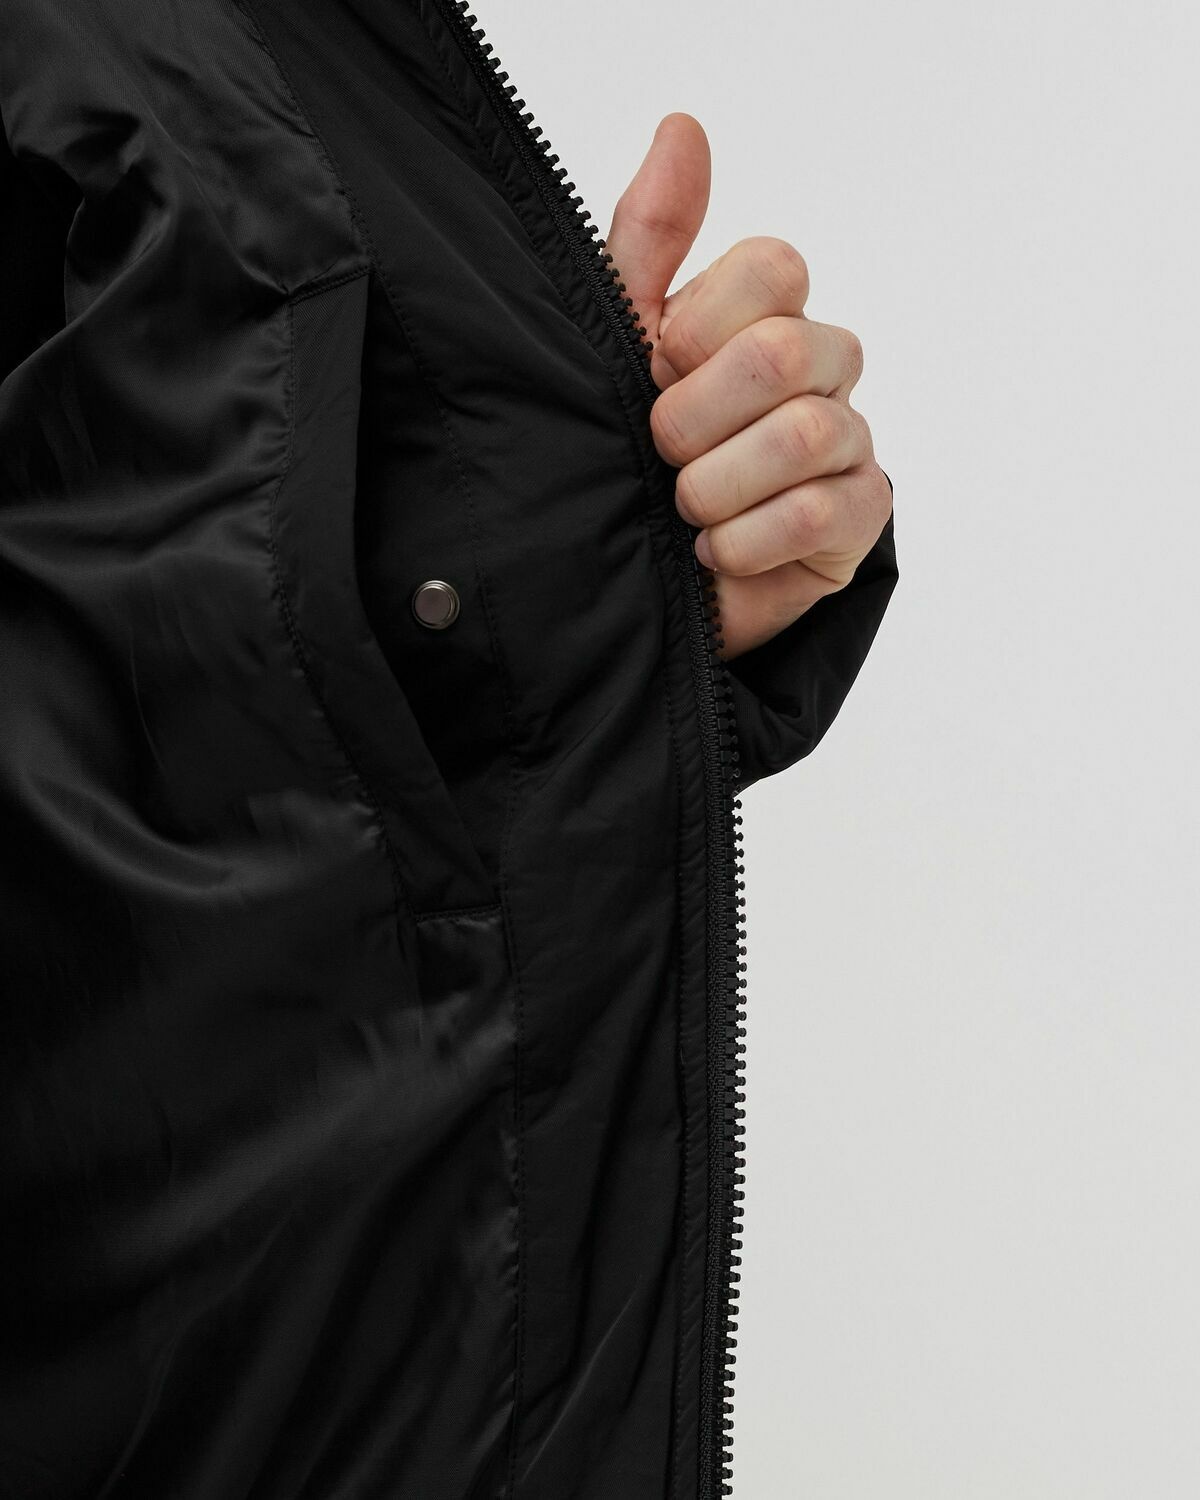 Bstn Brand Modular Puffer Jacket Black - Mens - Down & Puffer Jackets